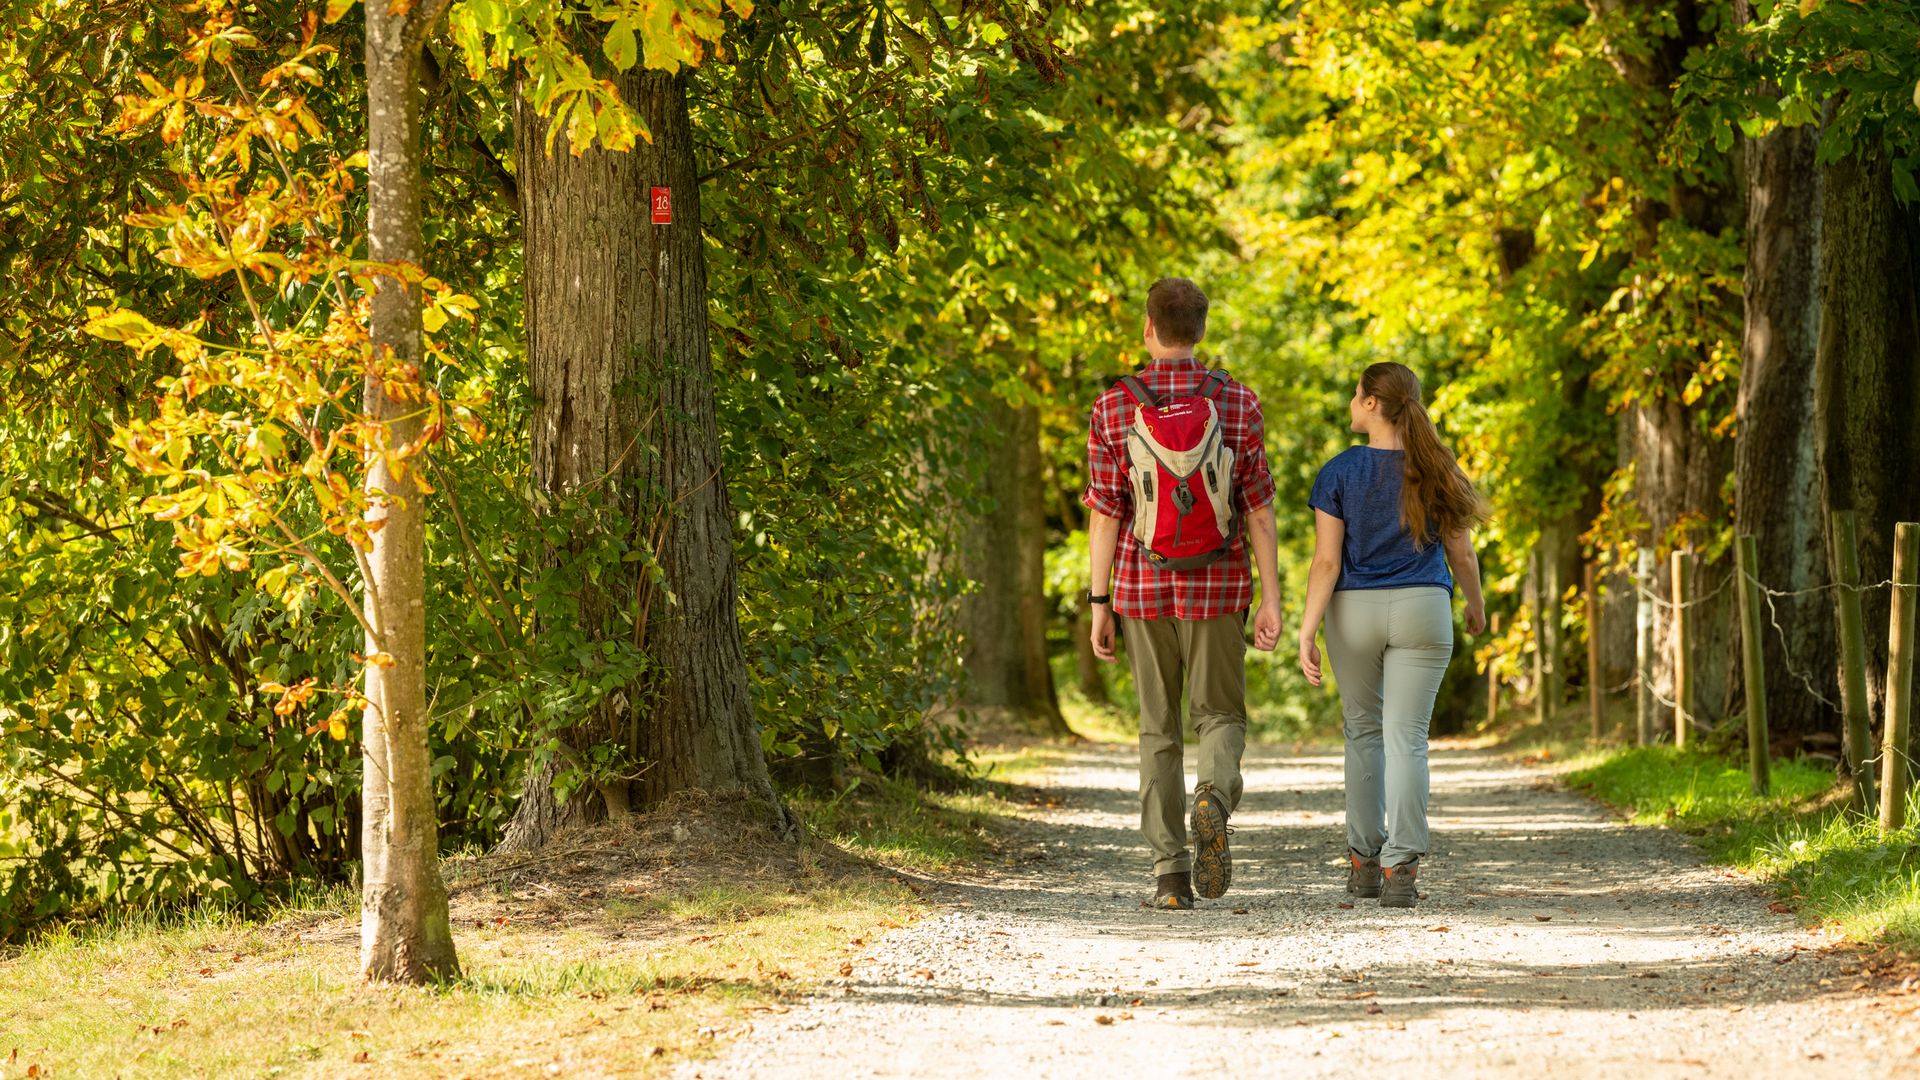 Zu sehen ist ein junges Paar von hinten, das auf einem Wanderweg durch den herbstlichen Wald mit bunten Blättern wandert.